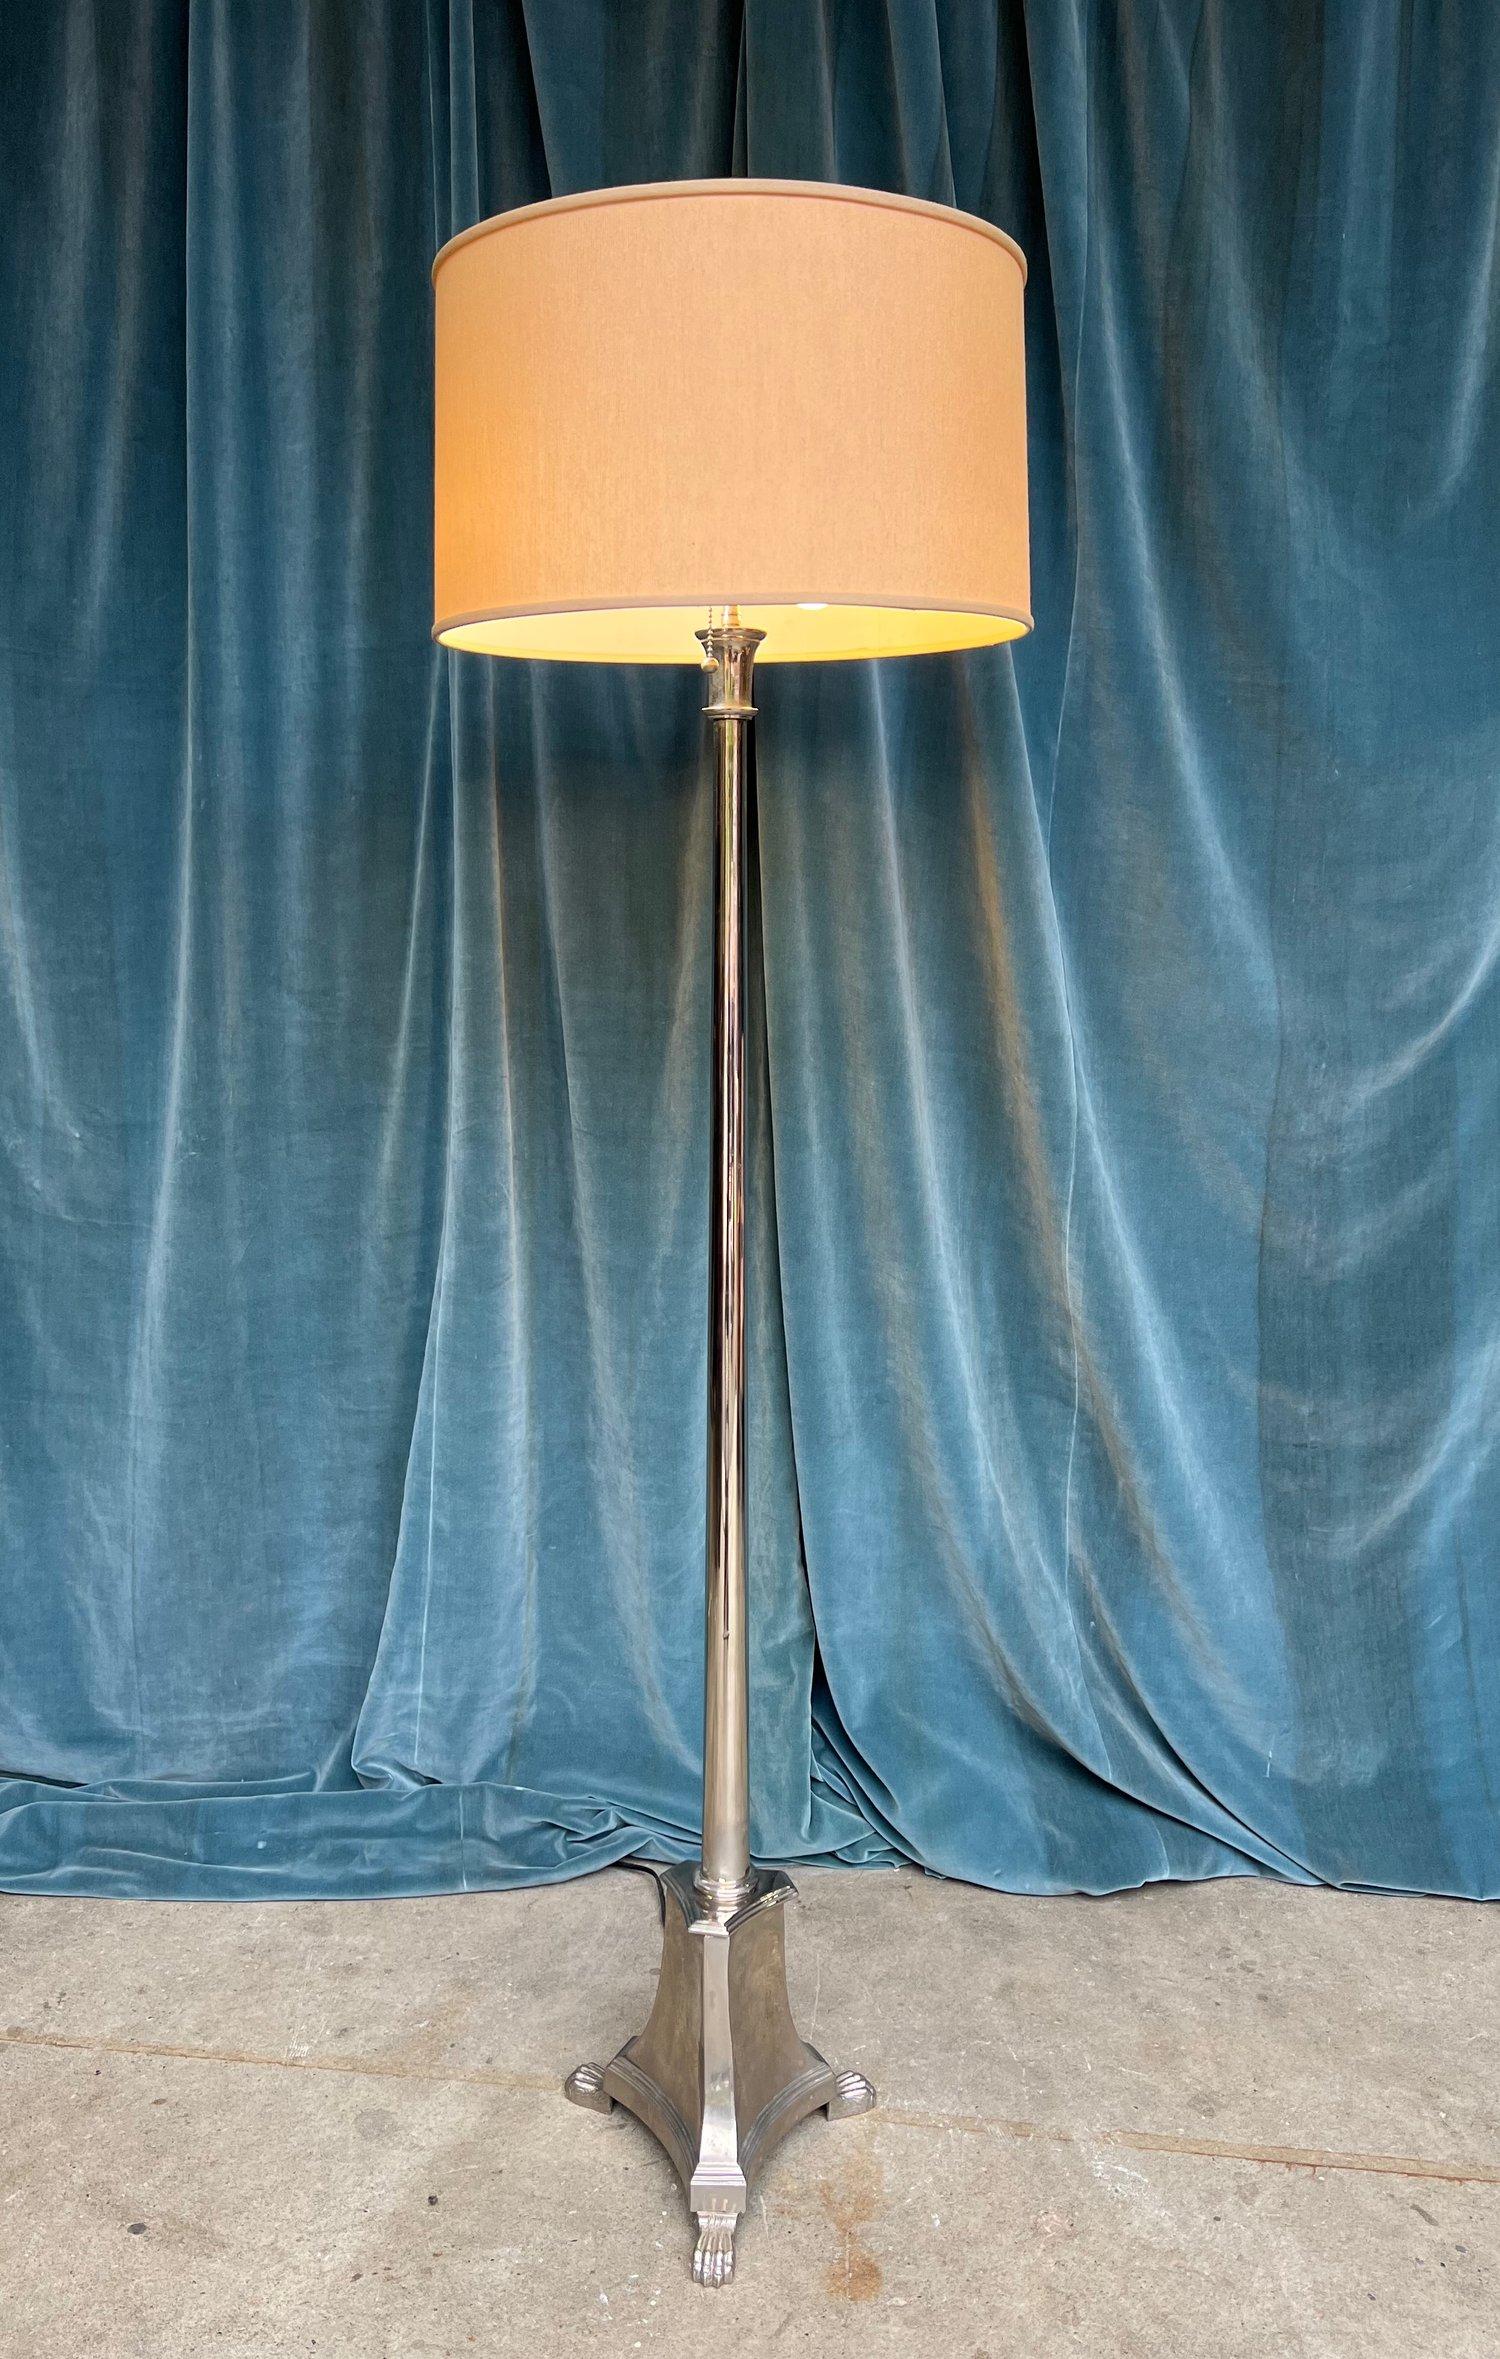 Un lampadaire de style néoclassique français des années 1940, en finition nickel poli, prêt à illuminer votre espace avec style et grâce. Il est doté d'une base triangulaire à pieds qui assure non seulement la stabilité, mais ajoute également un